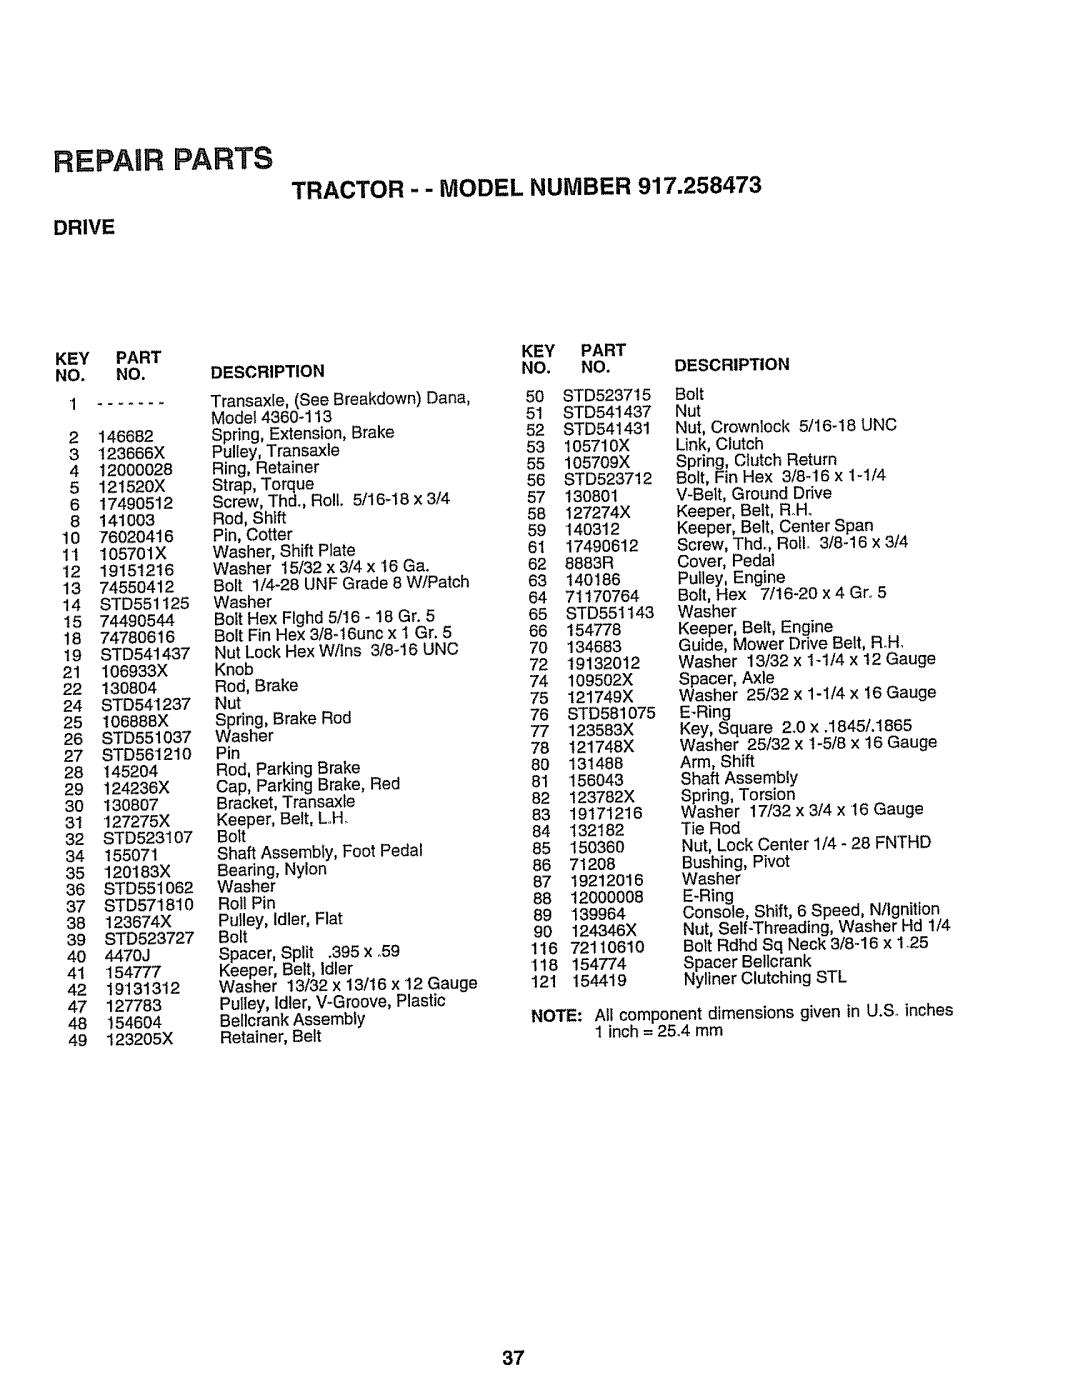 Sears 917.258473 Repair Parts, Tractor - - Model Number, Drive, Key Part No. No, 19151216, 74550412, Description 